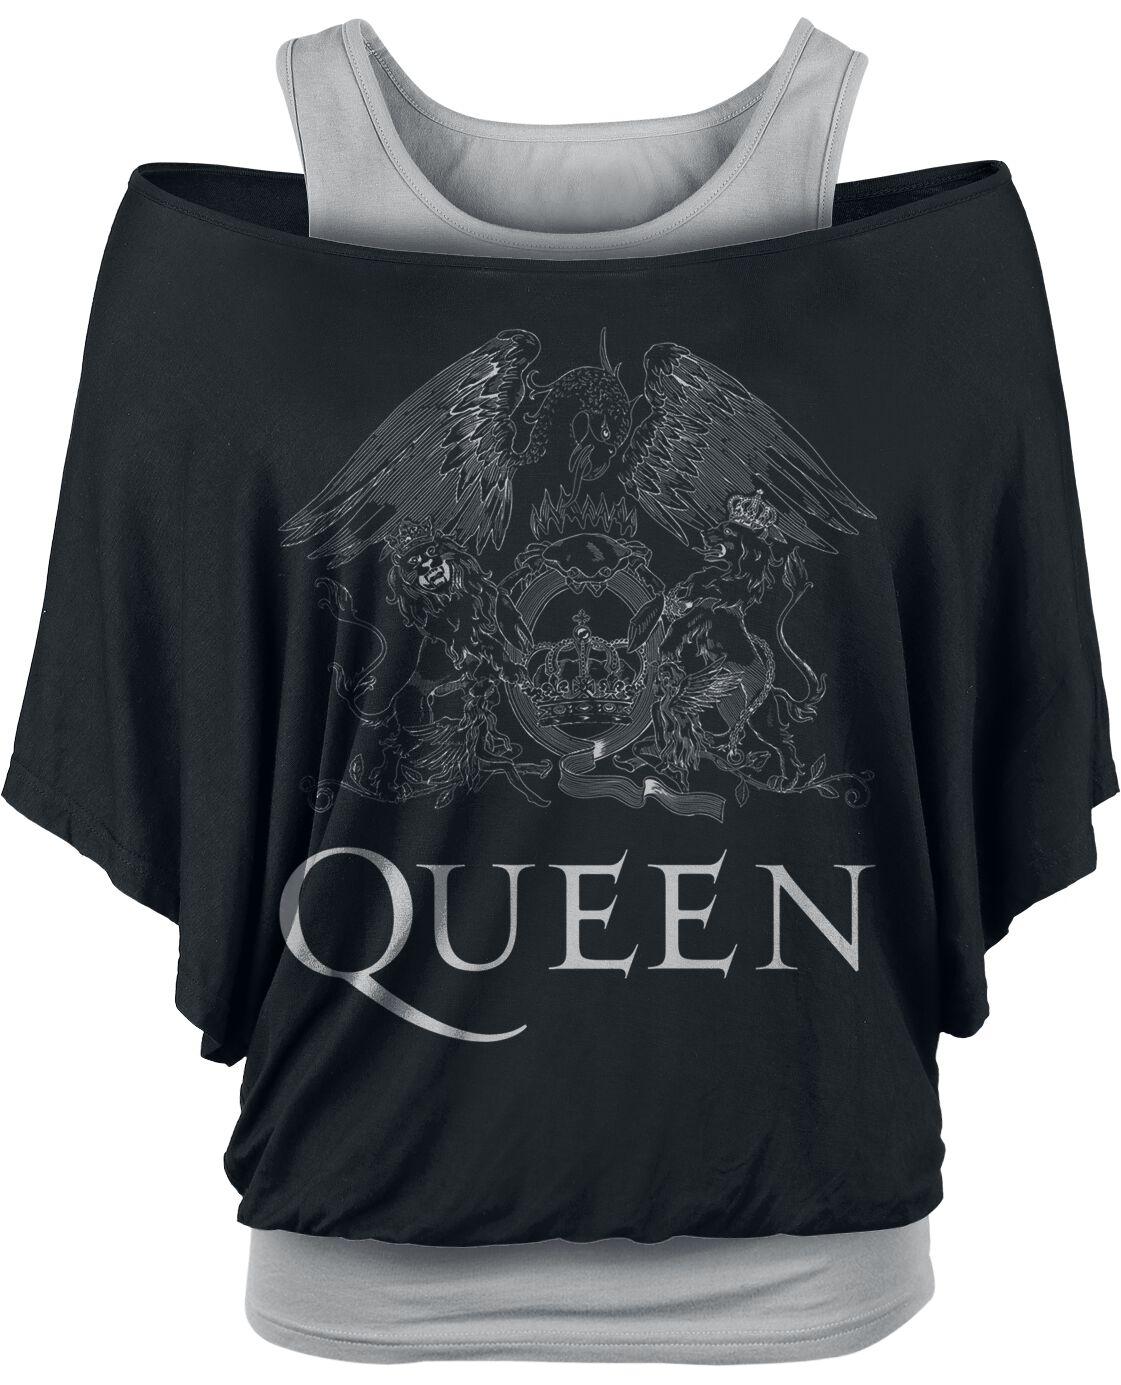 Queen T-Shirt - Crest Logo - M bis XXL - für Damen - Größe L - schwarz/grau  - EMP exklusives Merchandise!